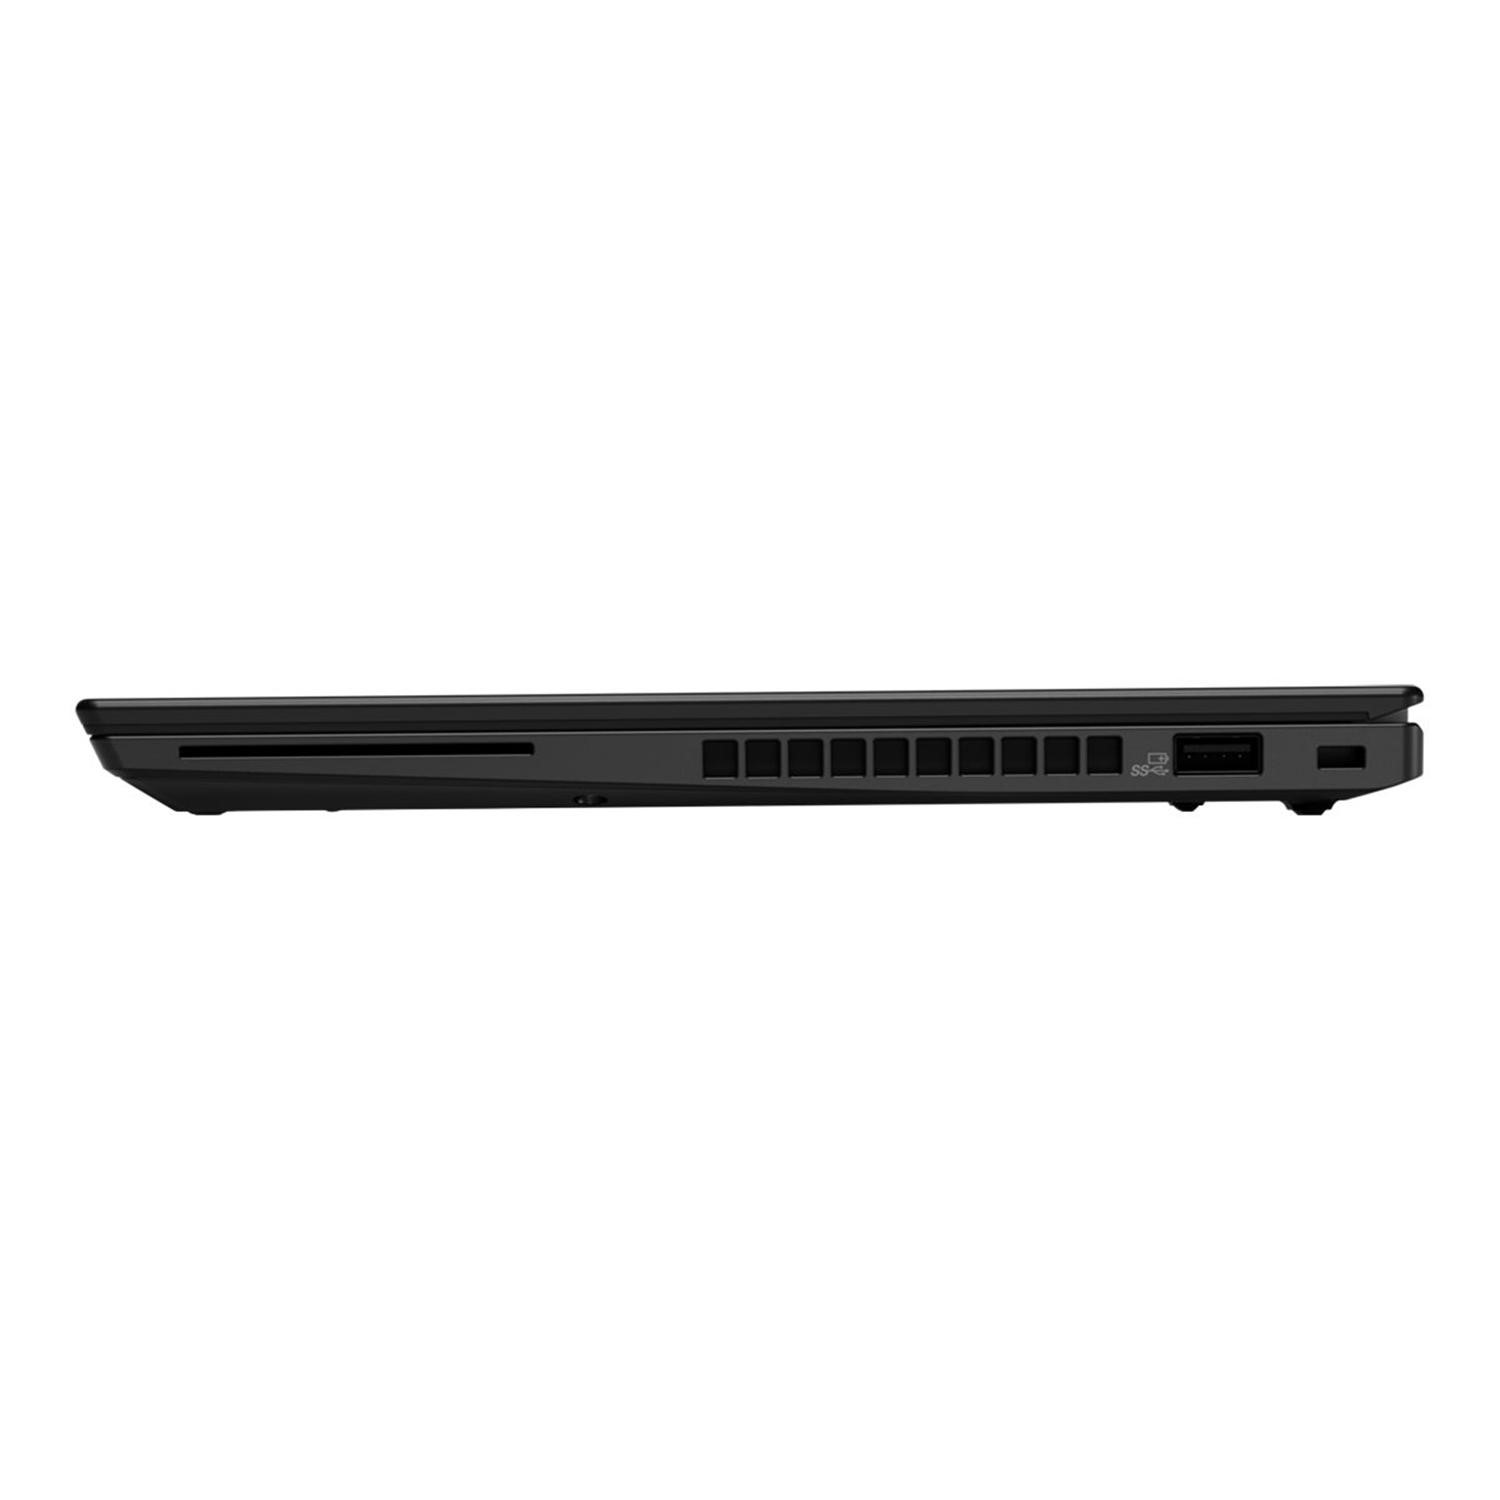 経典ブランド Lenovo ThinkPad A285 AMD RYZEN5PRO 16GB